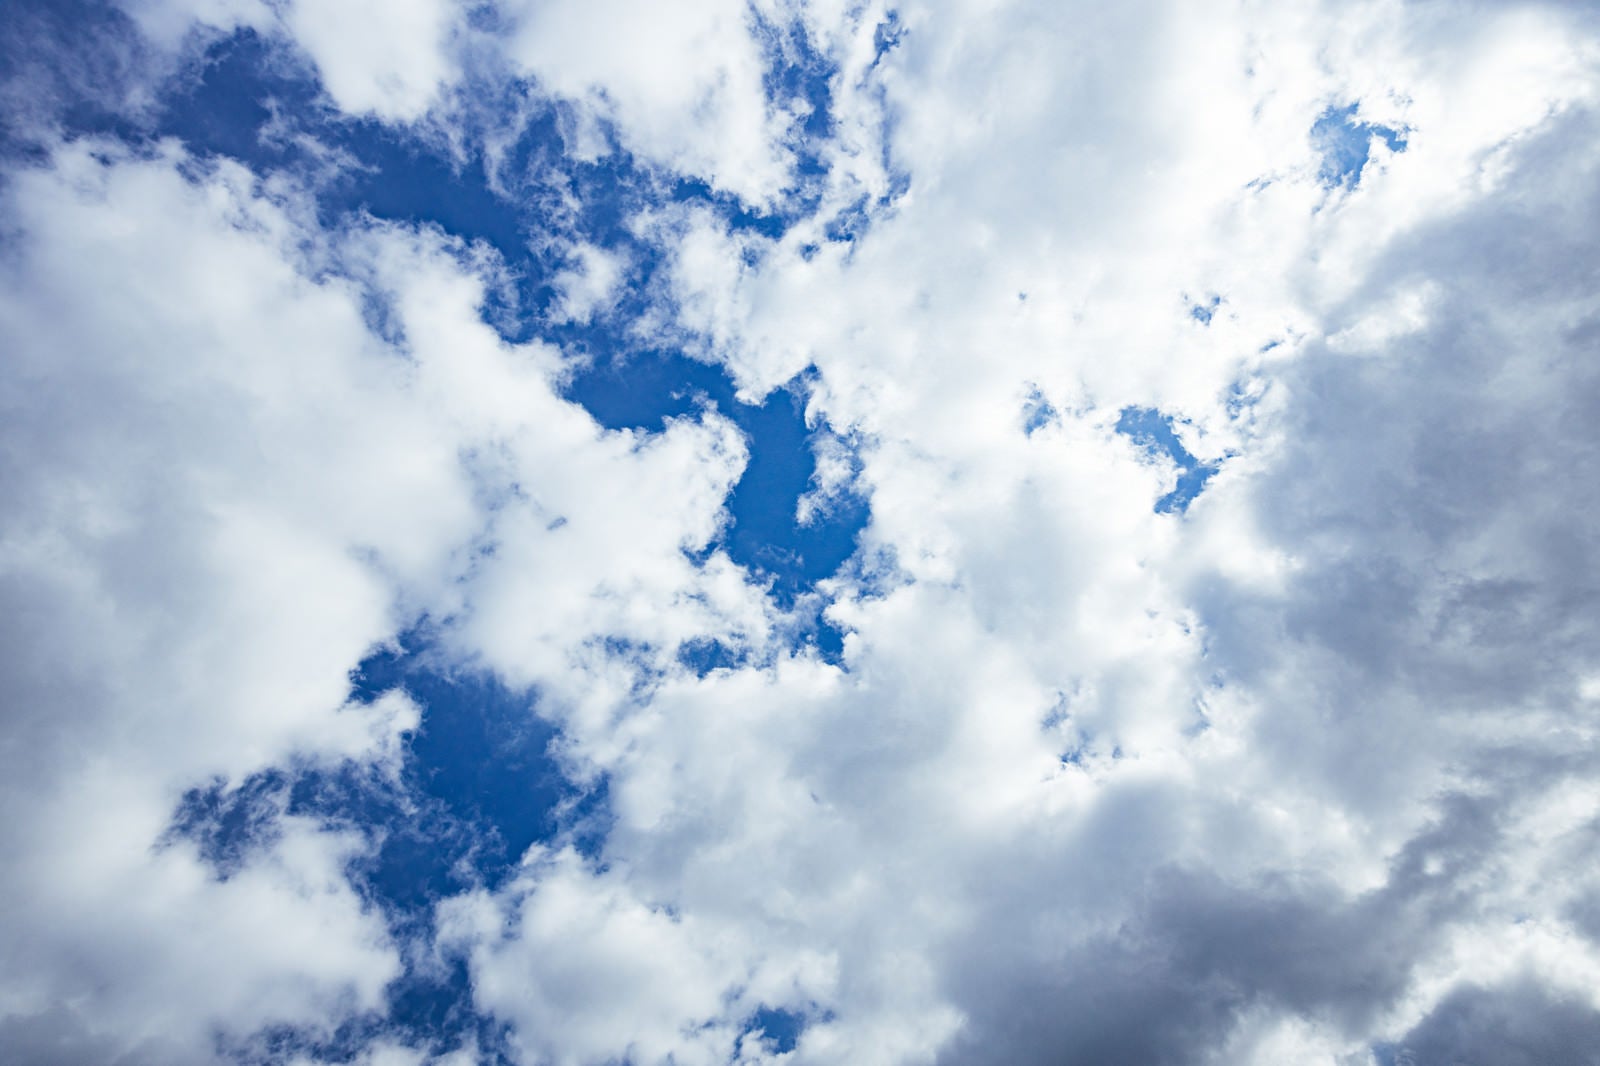 「綿雲の合間から見える青空」の写真